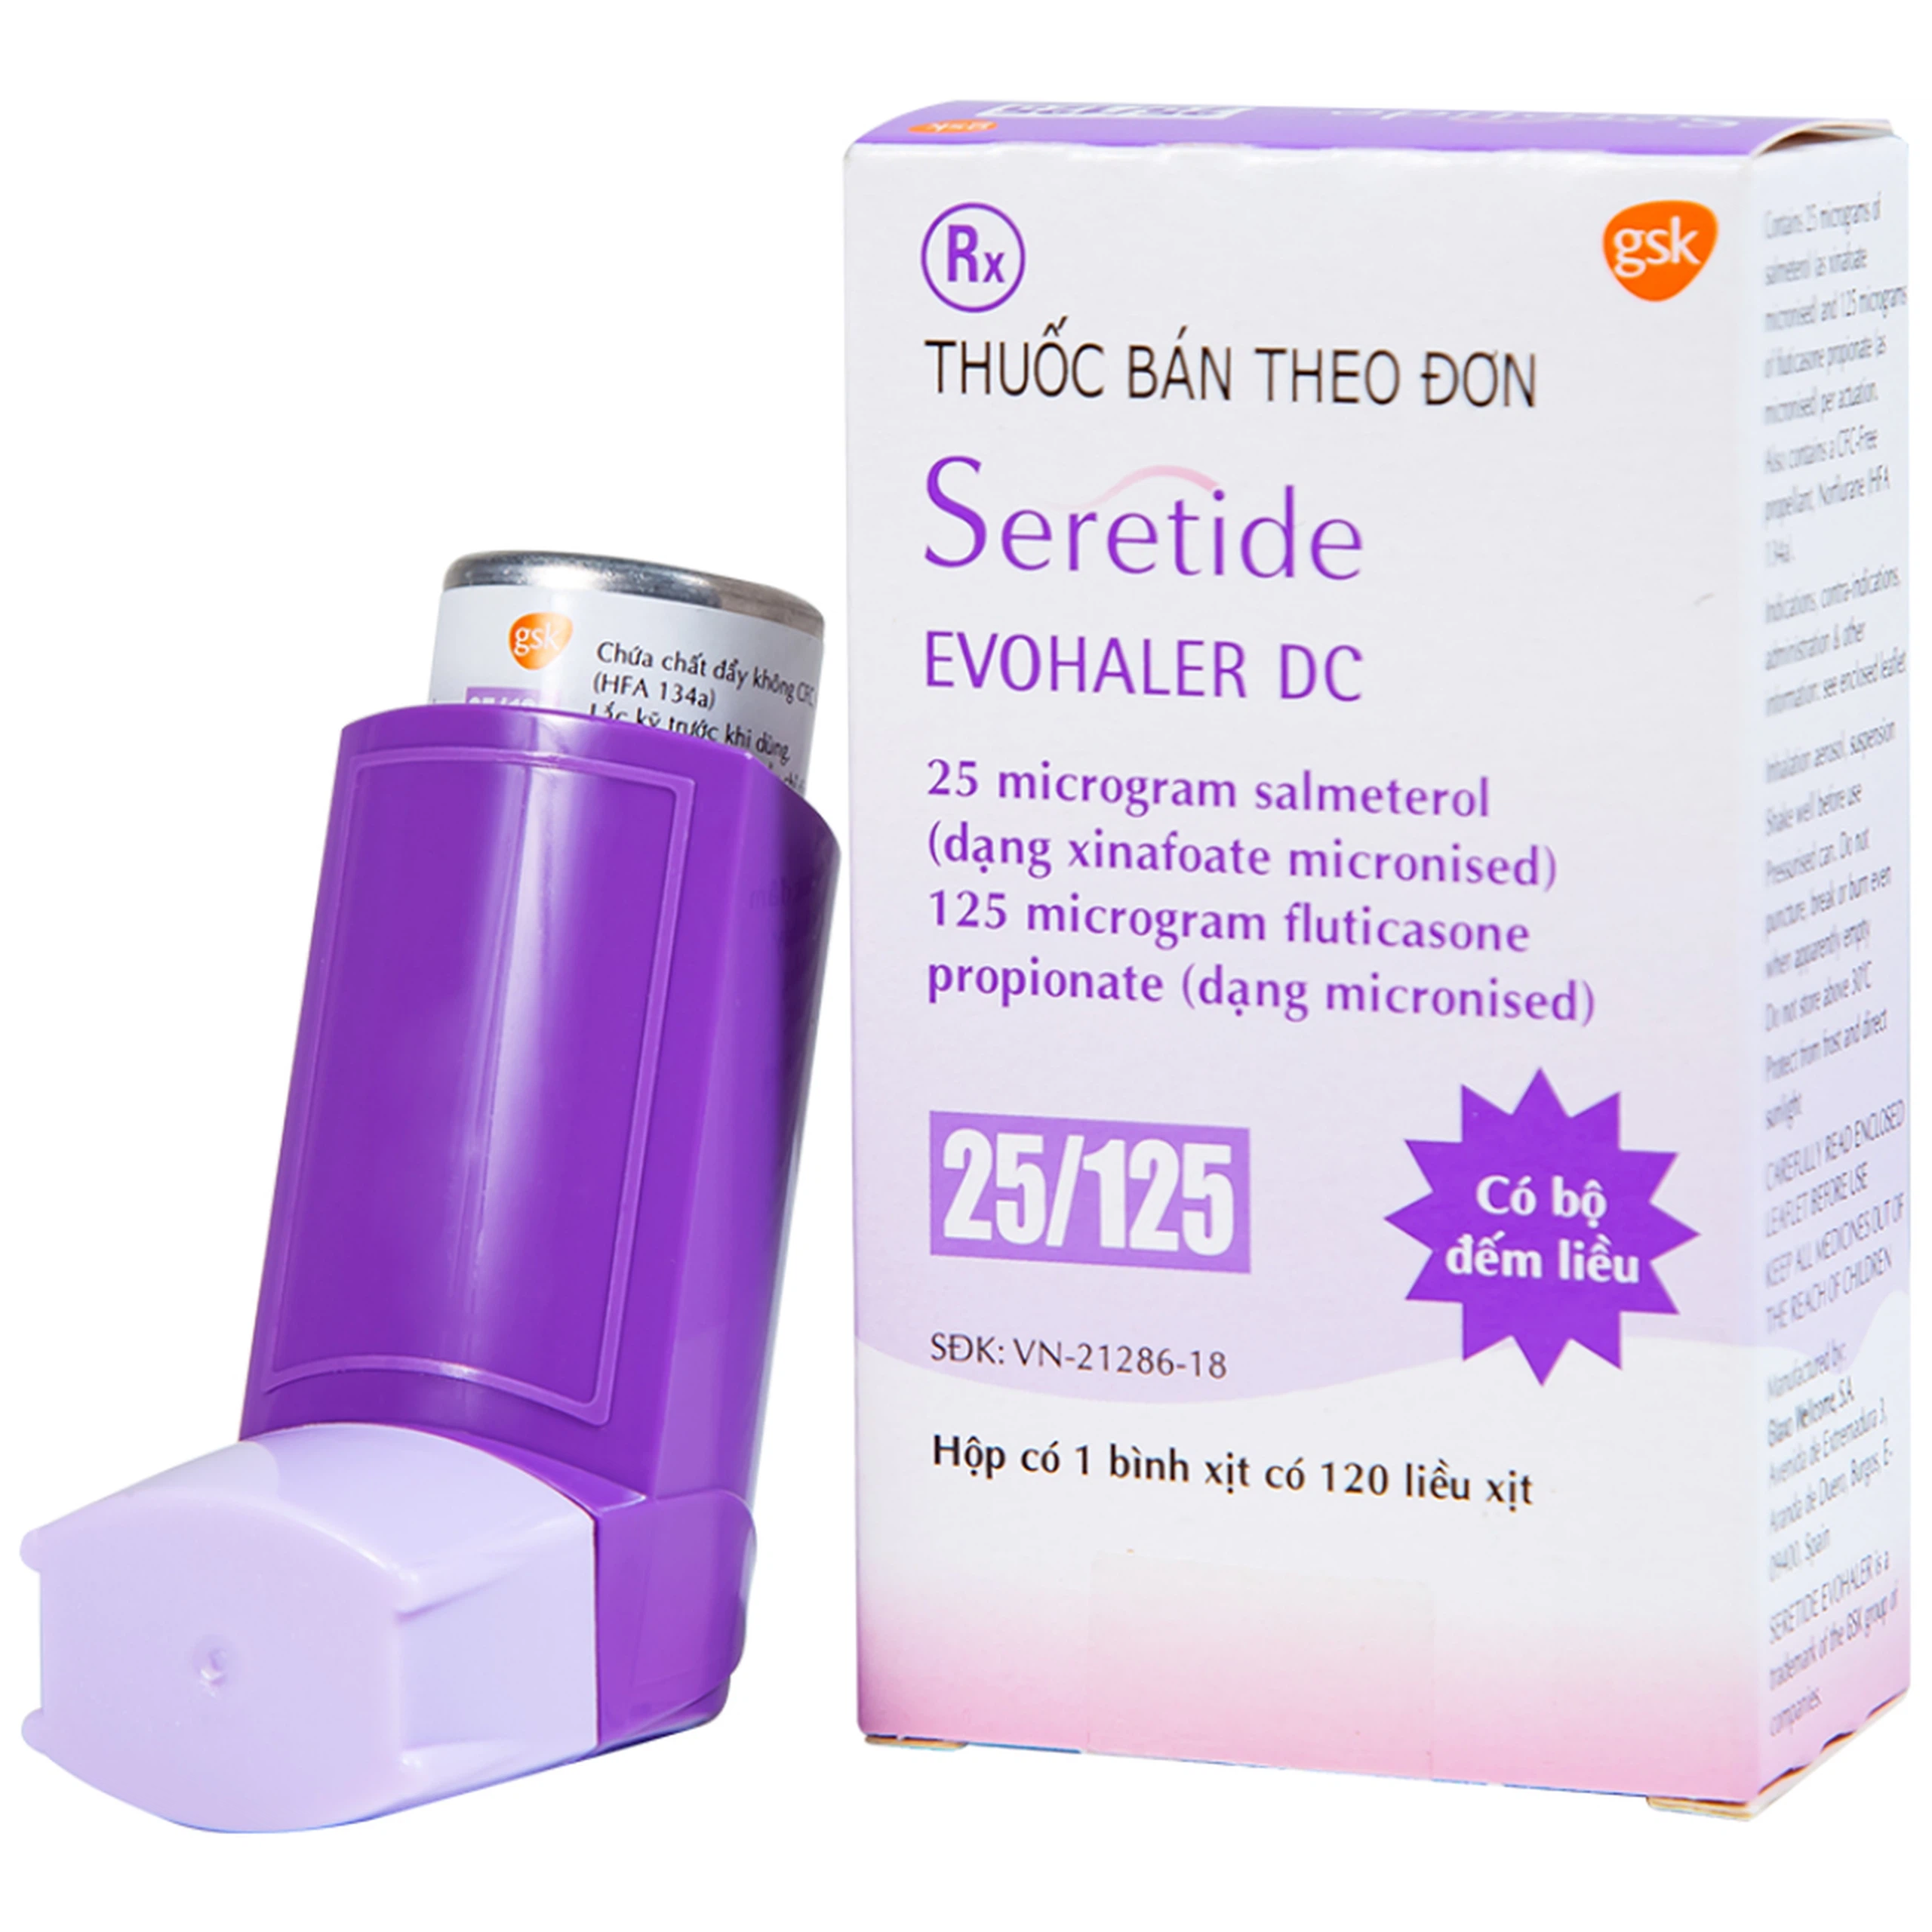 Khí dung Seretide Evohaler DC 25/125 Gsk điều trị hen phế quản, tắc nghẽn phổi mạn tính (120 liều)